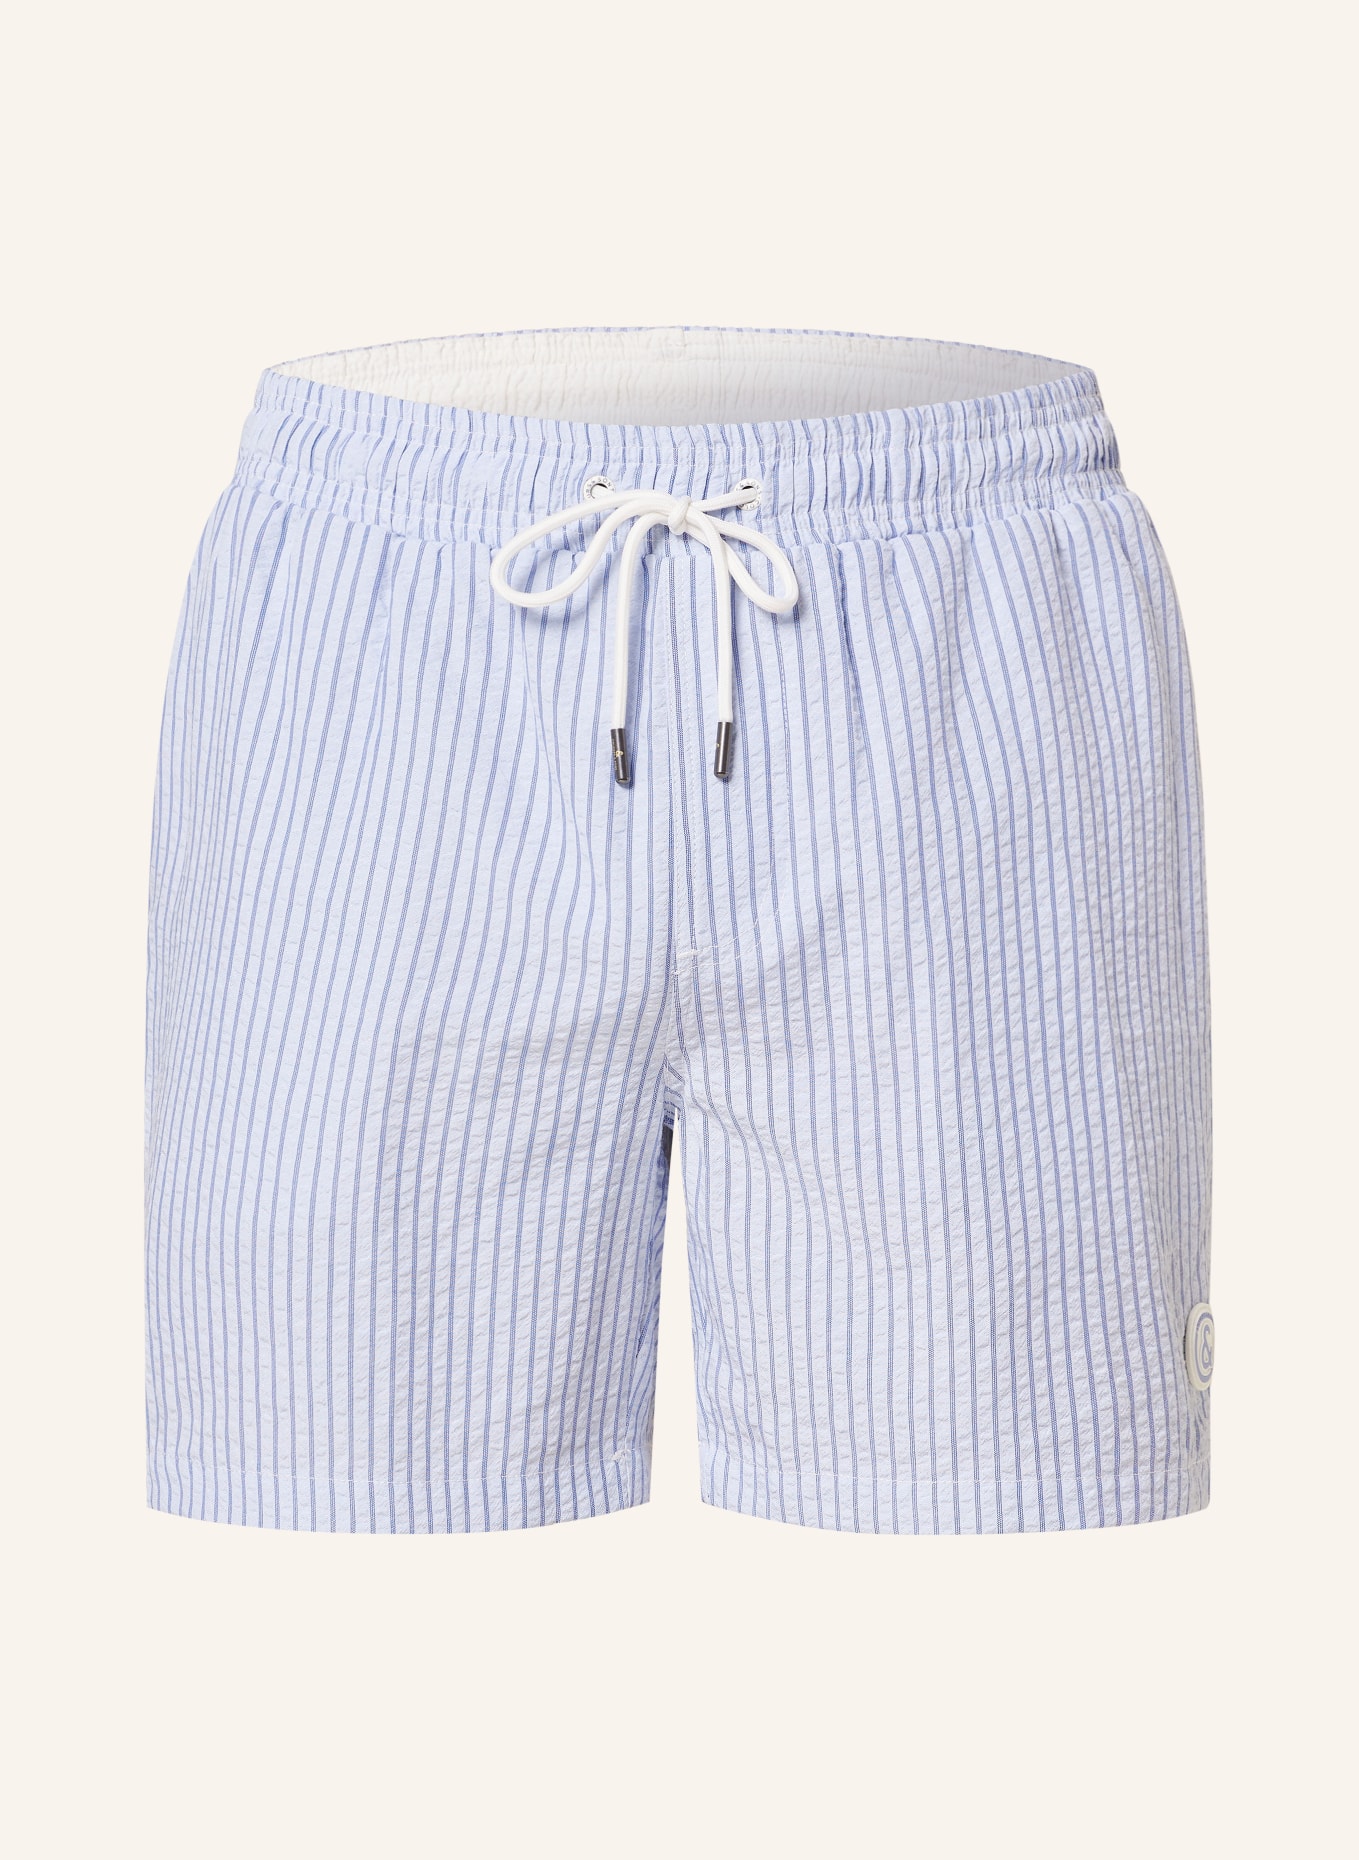 COLOURS & SONS Swim shorts, Color: LIGHT BLUE/ BLUE (Image 1)